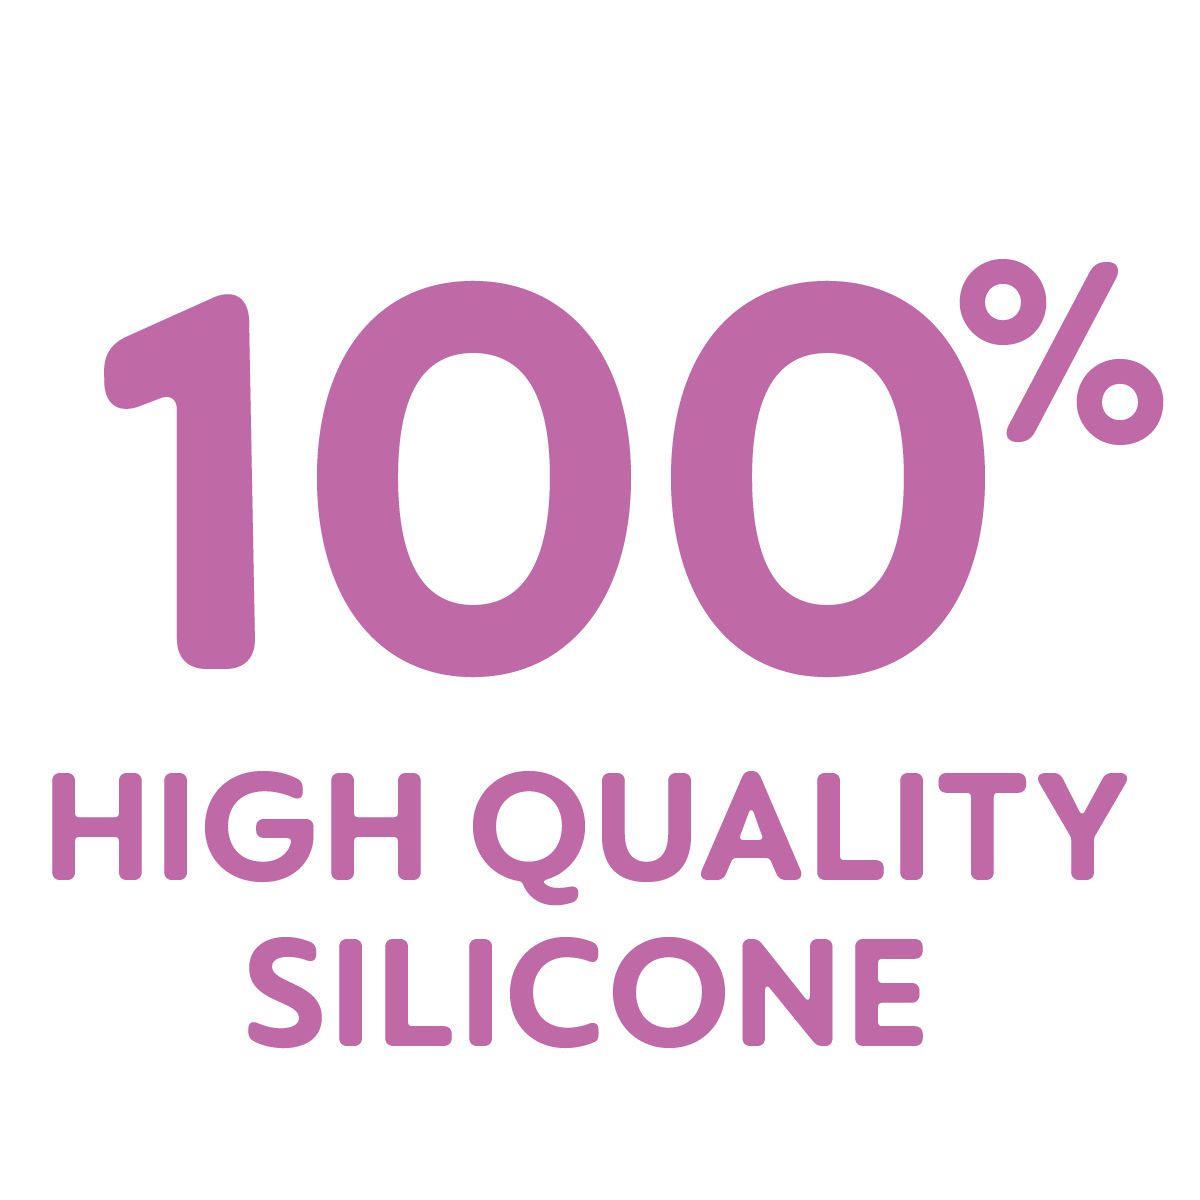 Αυτό το προϊόν είναι κατασκευασμένο από 100% σιλικόνη υψηλής ποιότητας – εξαιρετικά υγιεινή, ανθεκτική και ασφαλής